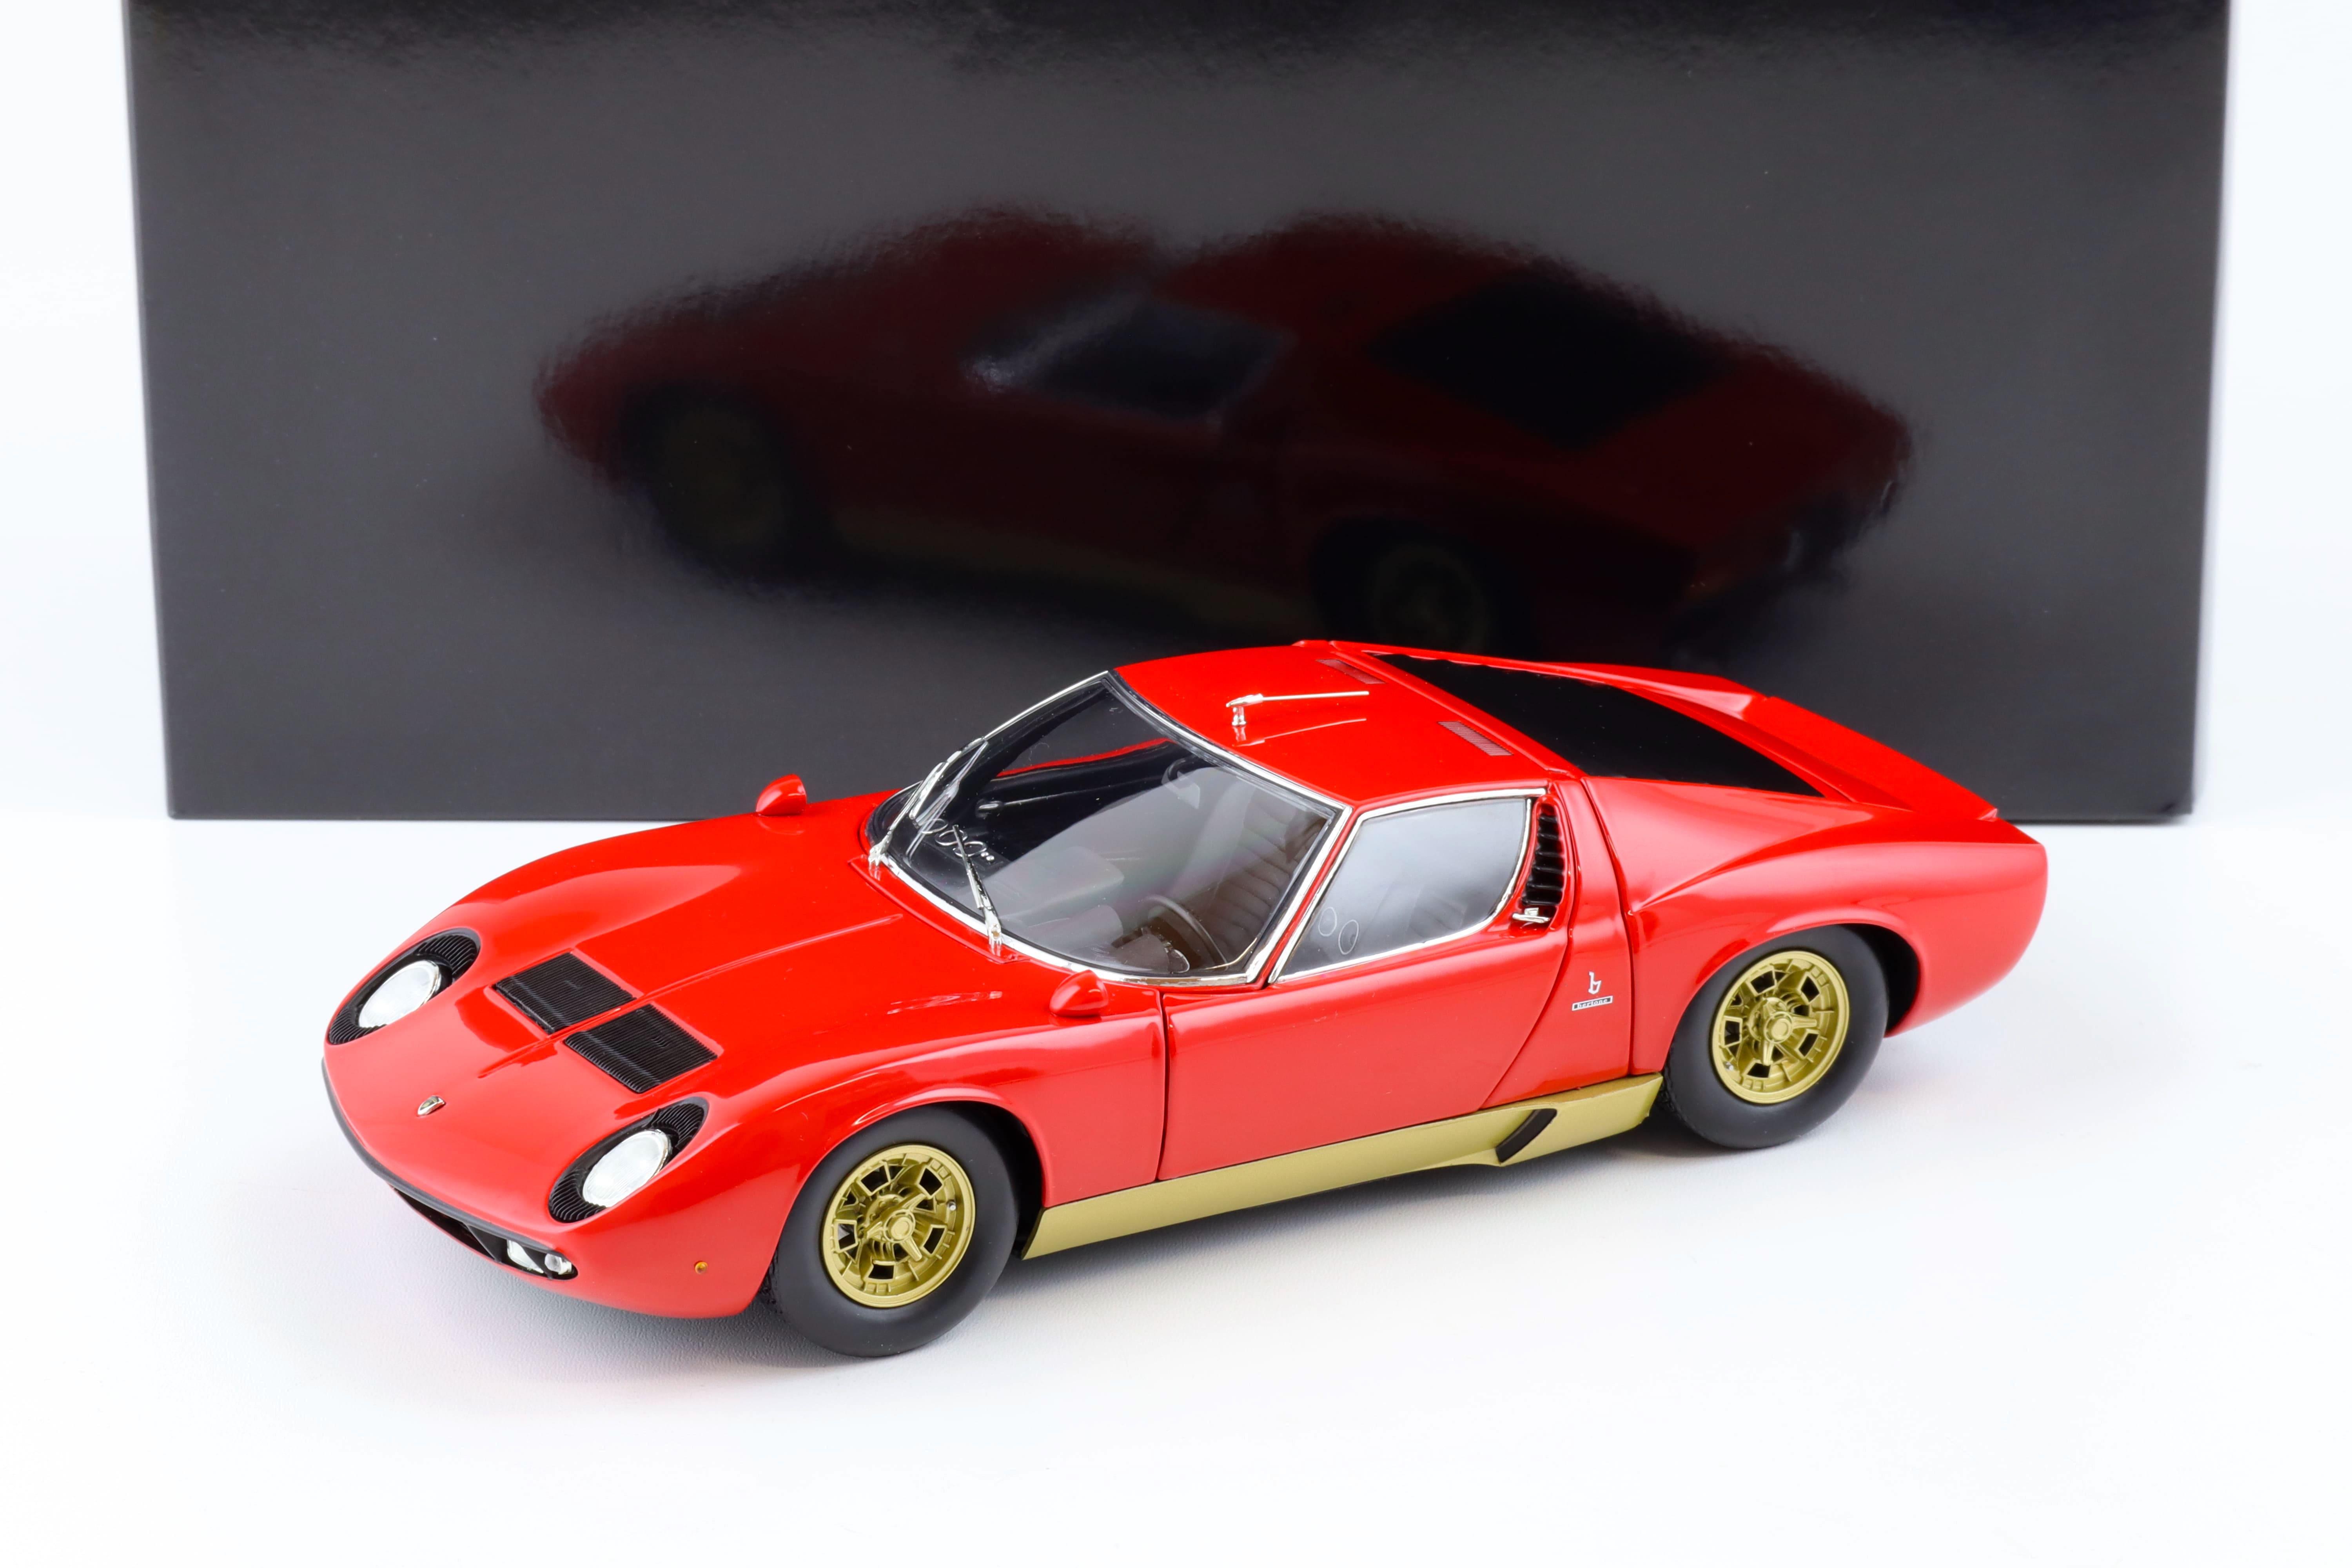 1:18 Kyosho Lamborghini Miura S Coupe red/ gold 08316R